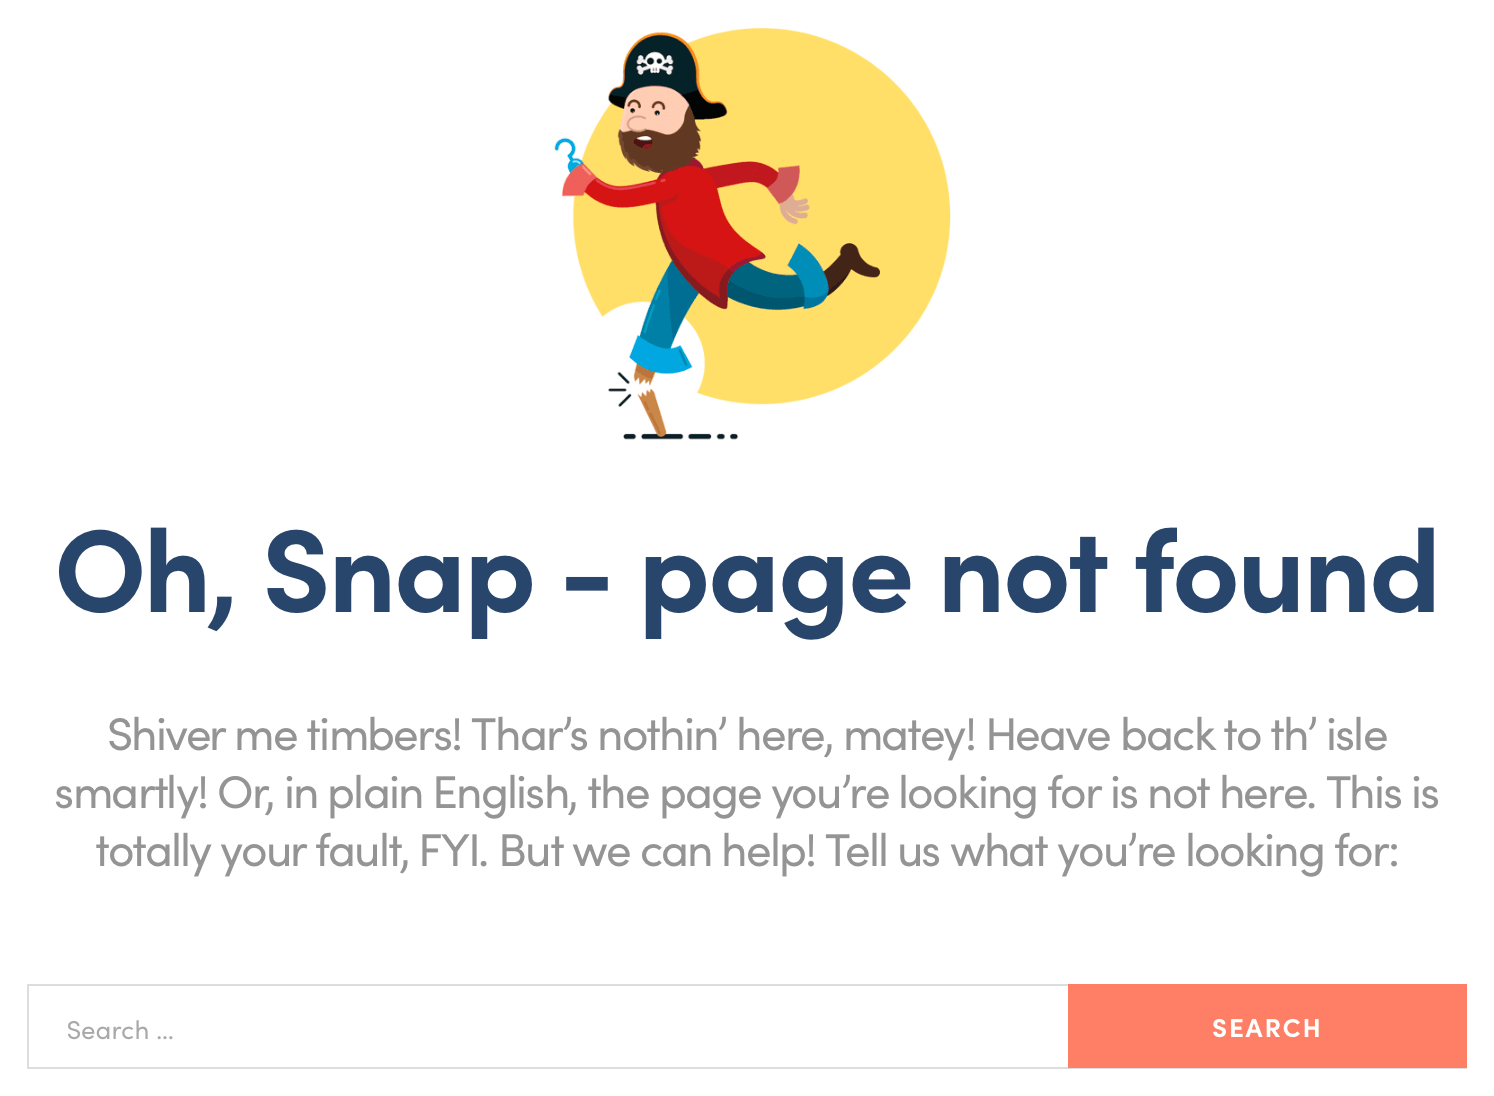 La page d'erreur ThemeIsle 404.